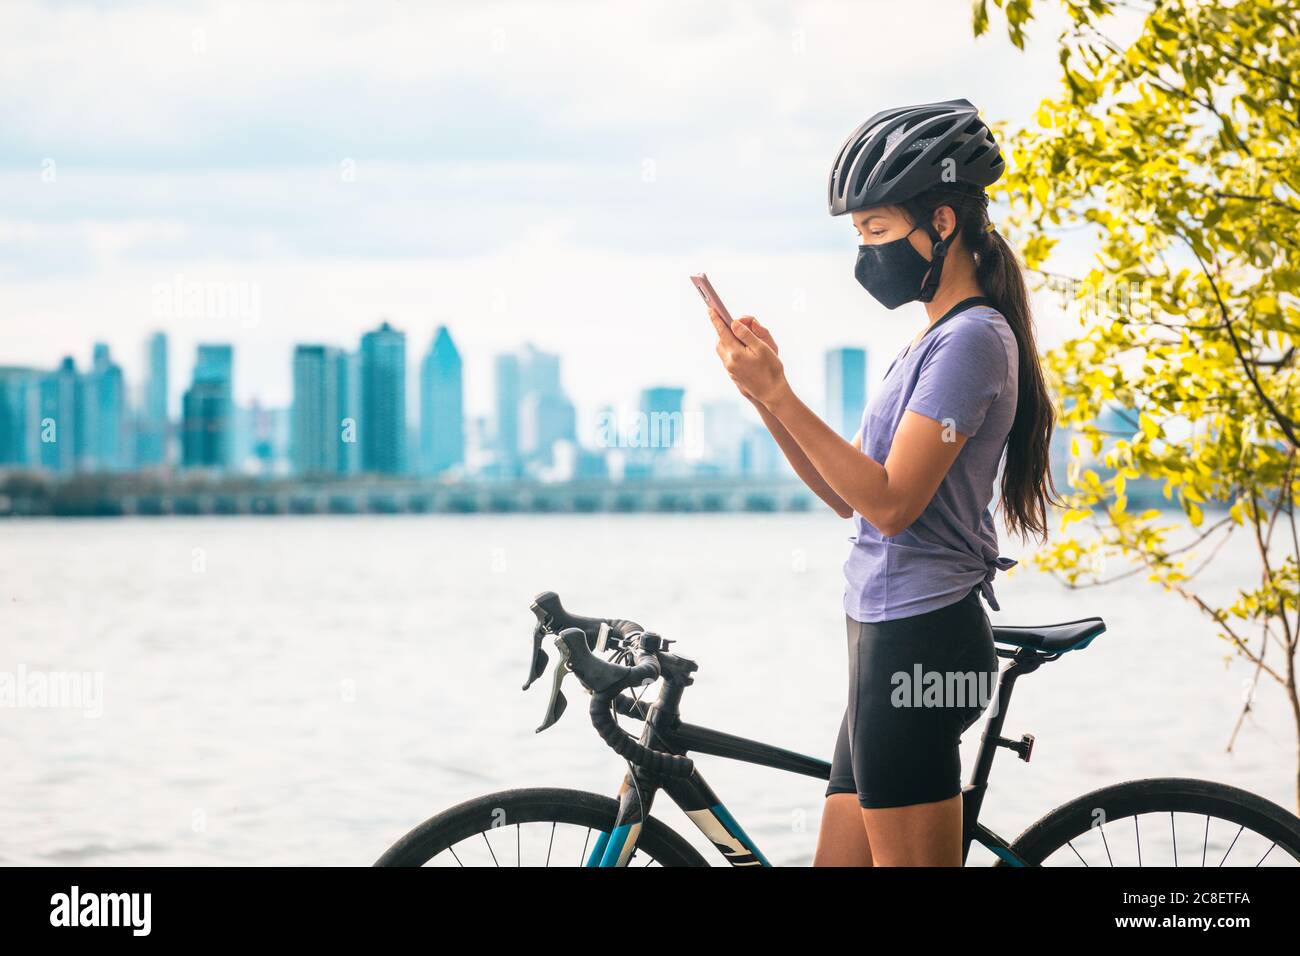 Fahrradfahrer mit Handy für Kontakt Tracing App trägt COVID-19 Gesichtsmaske als Coronavirus Prävention während der Fahrt mit dem Rennrad außerhalb der Stadt Stockfoto